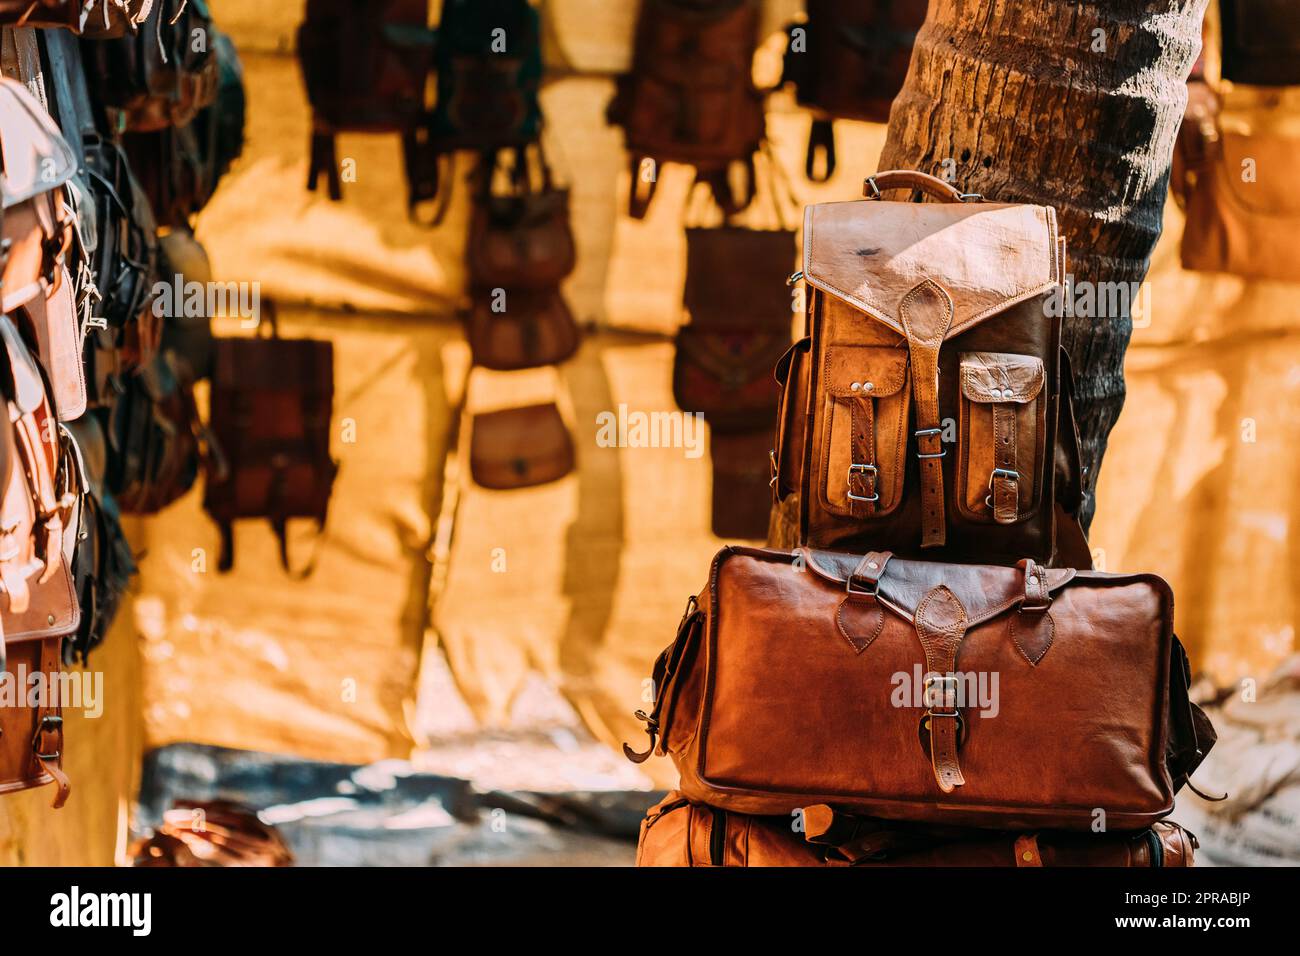 Market Shop avec articles en cuir - sacs, portefeuilles, sacs à dos, porte-documents de différentes couleurs et tailles Banque D'Images